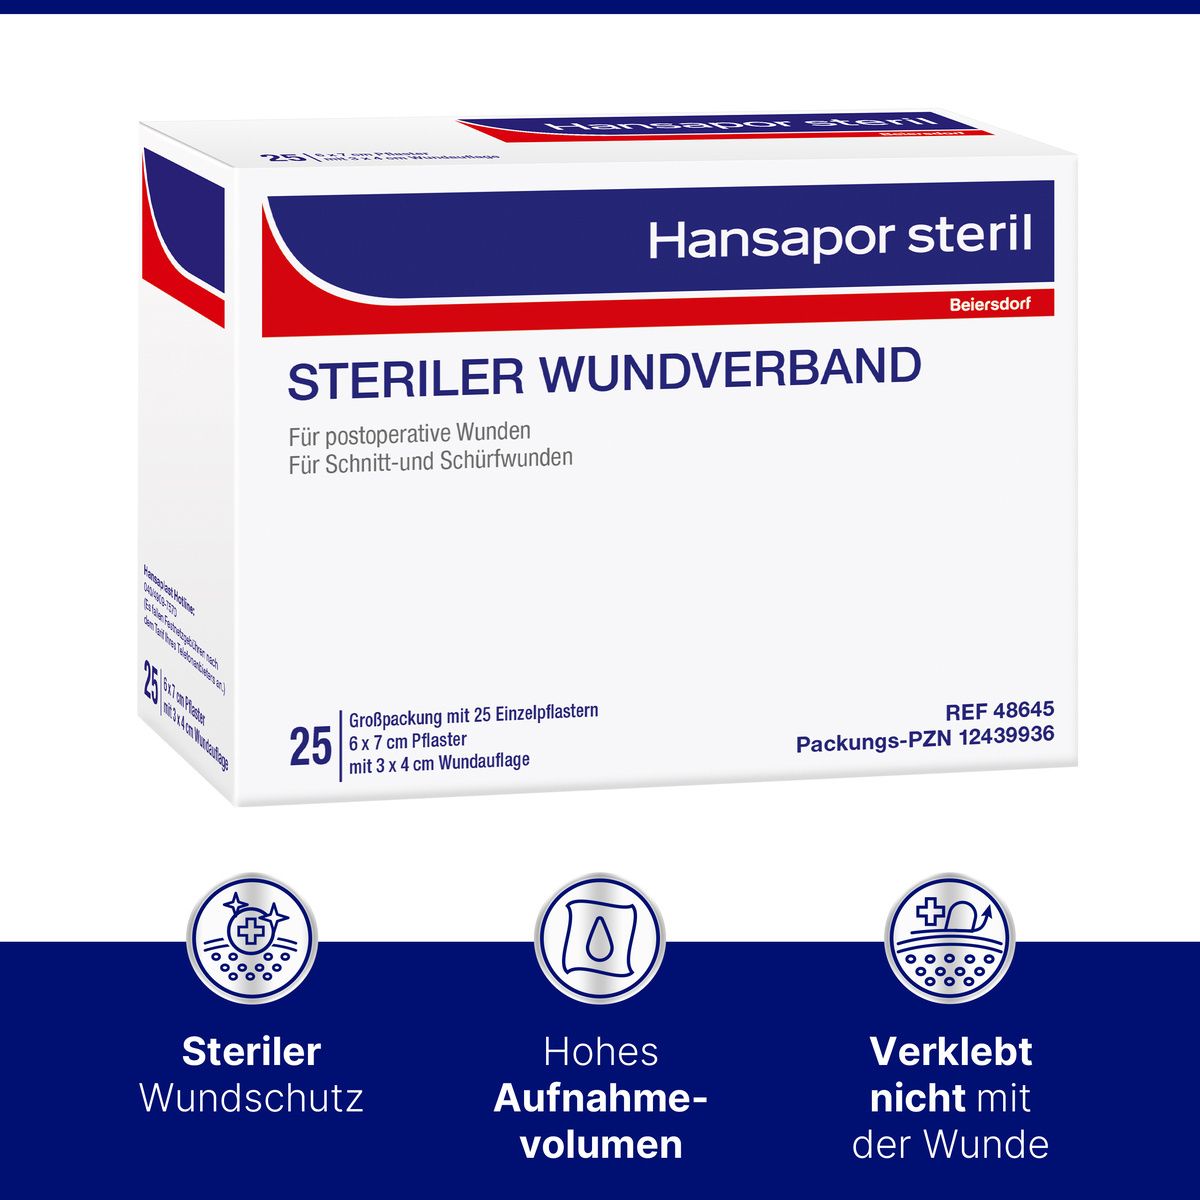 Hansapor steril Wundverband 6 x 7 cm - Jetzt 20% sparen mit dem Code "pflaster20"